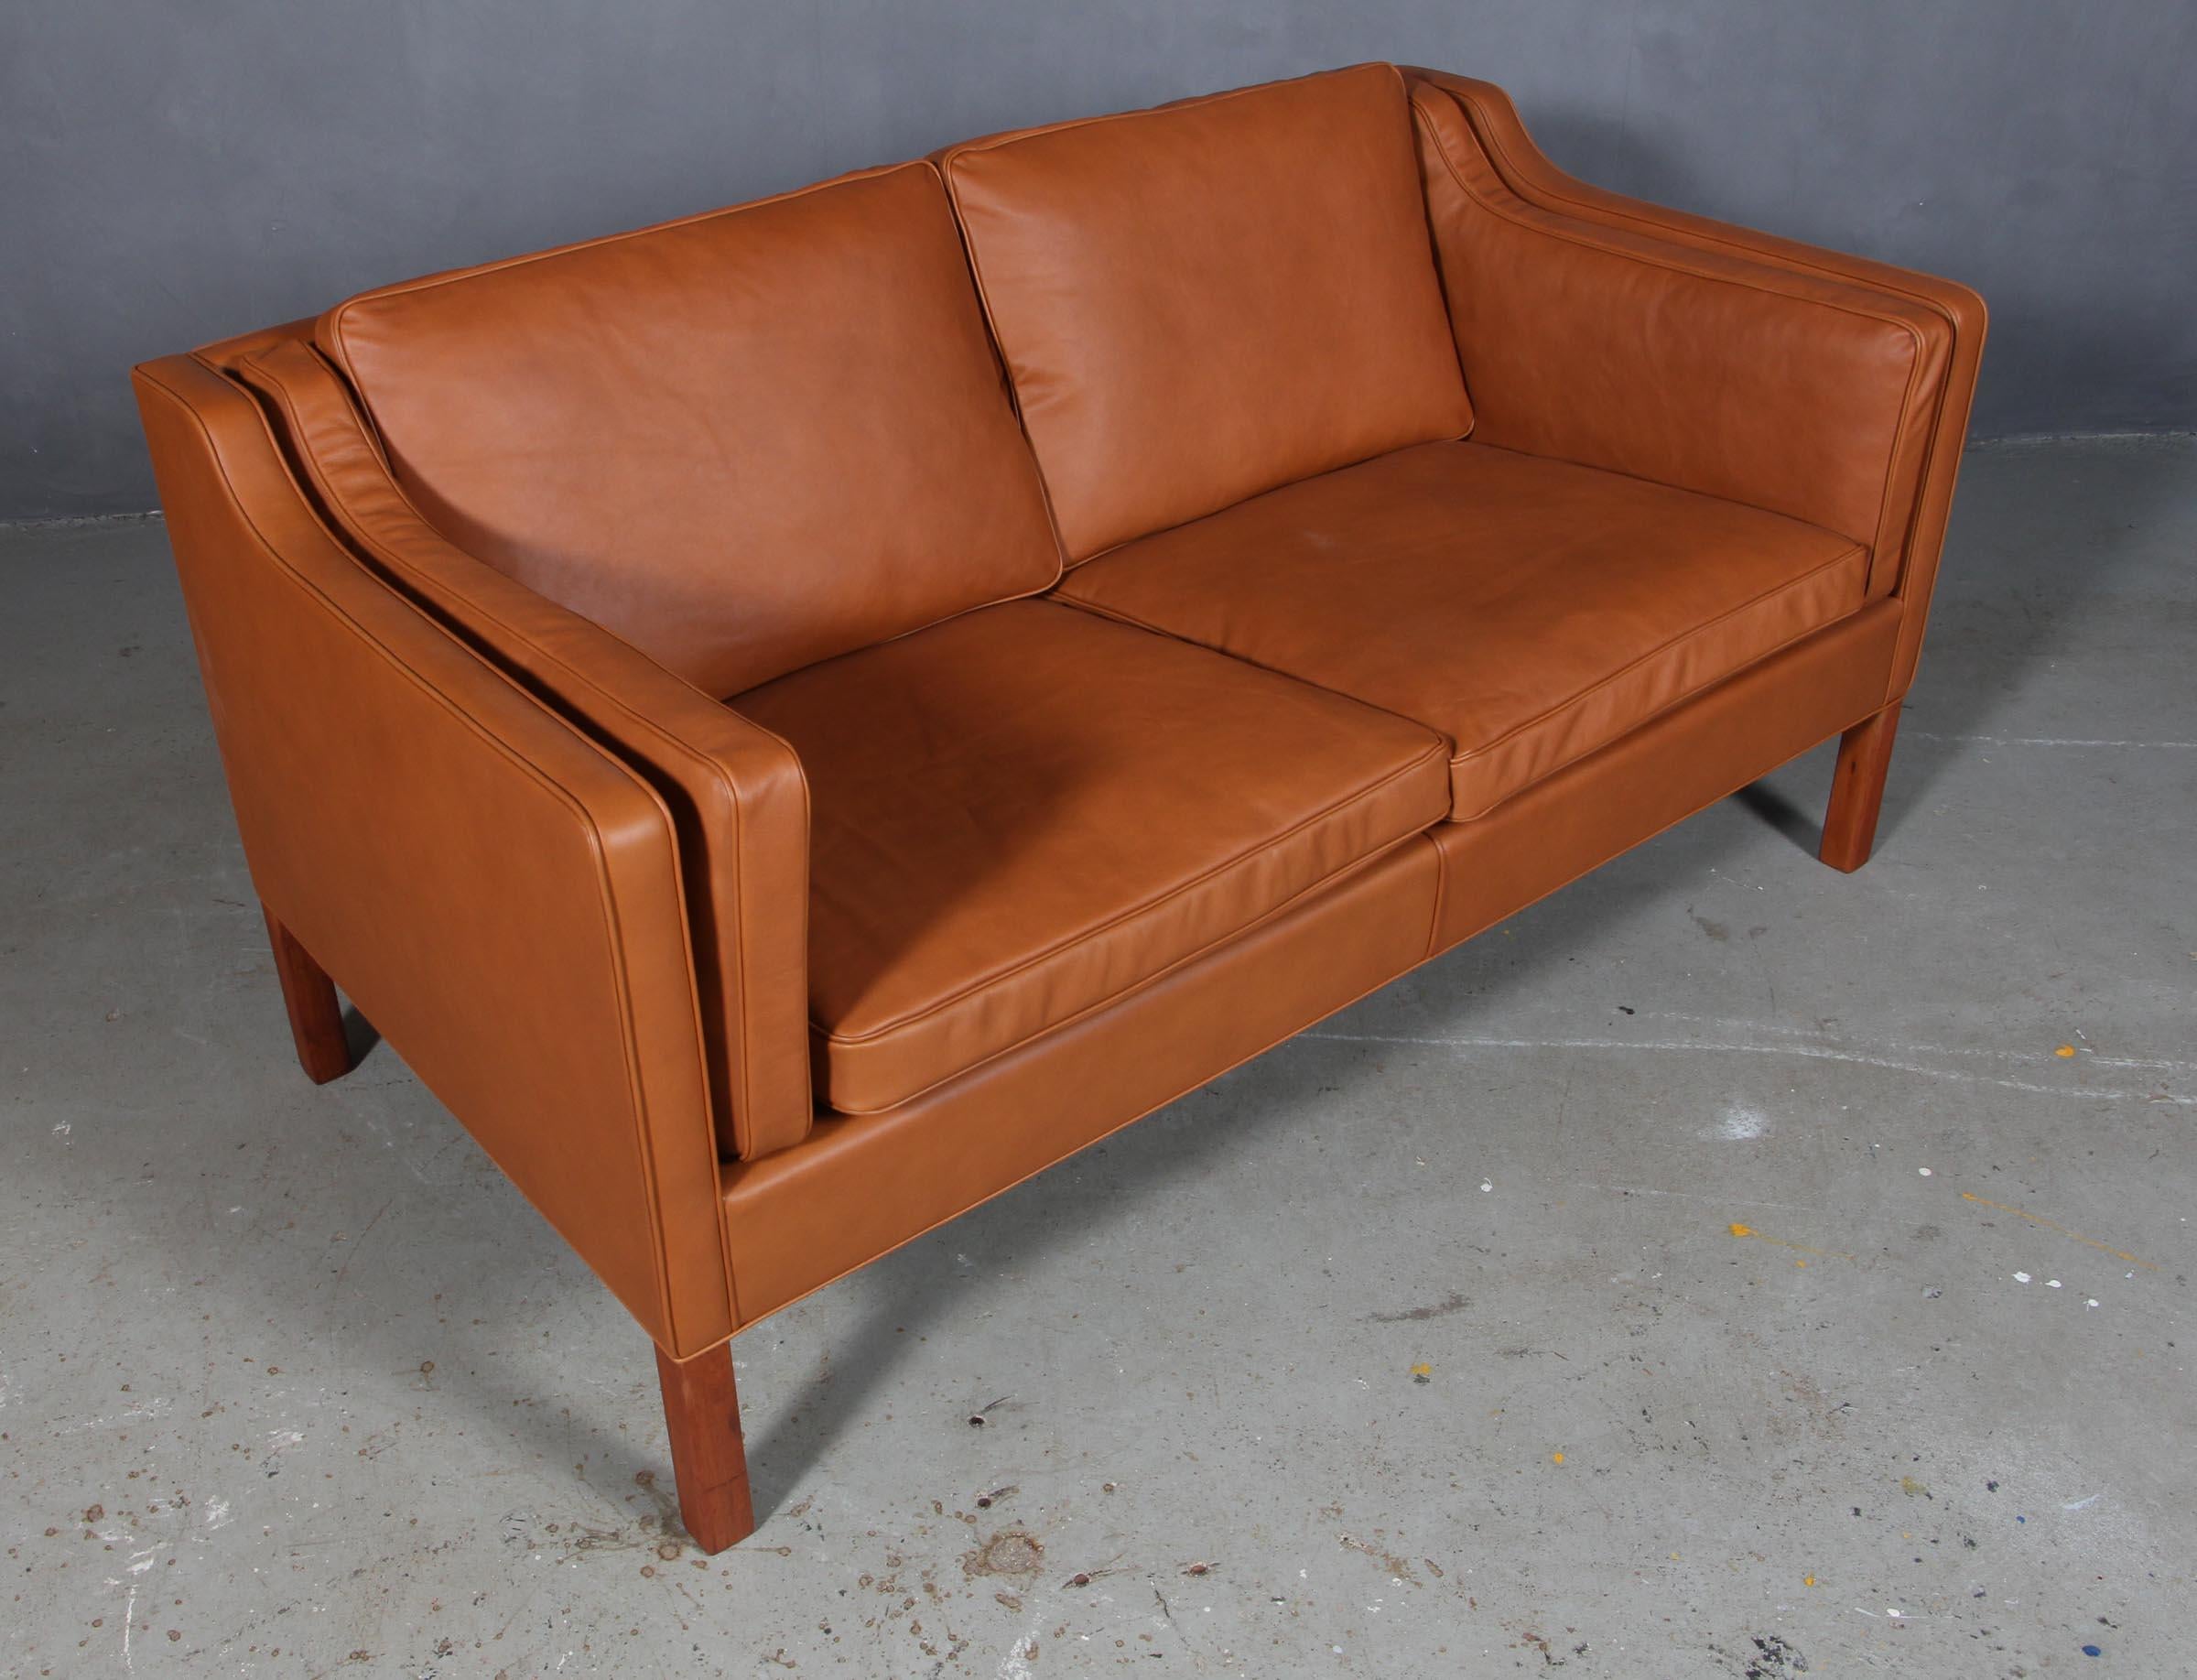 Børge Mogensen Zweisitzer-Sofa neu gepolstert mit Anilinleder Walnuss Eleganz.

Beine aus Mahagoni.

Modell 2212, hergestellt von Fredericia Furniture.